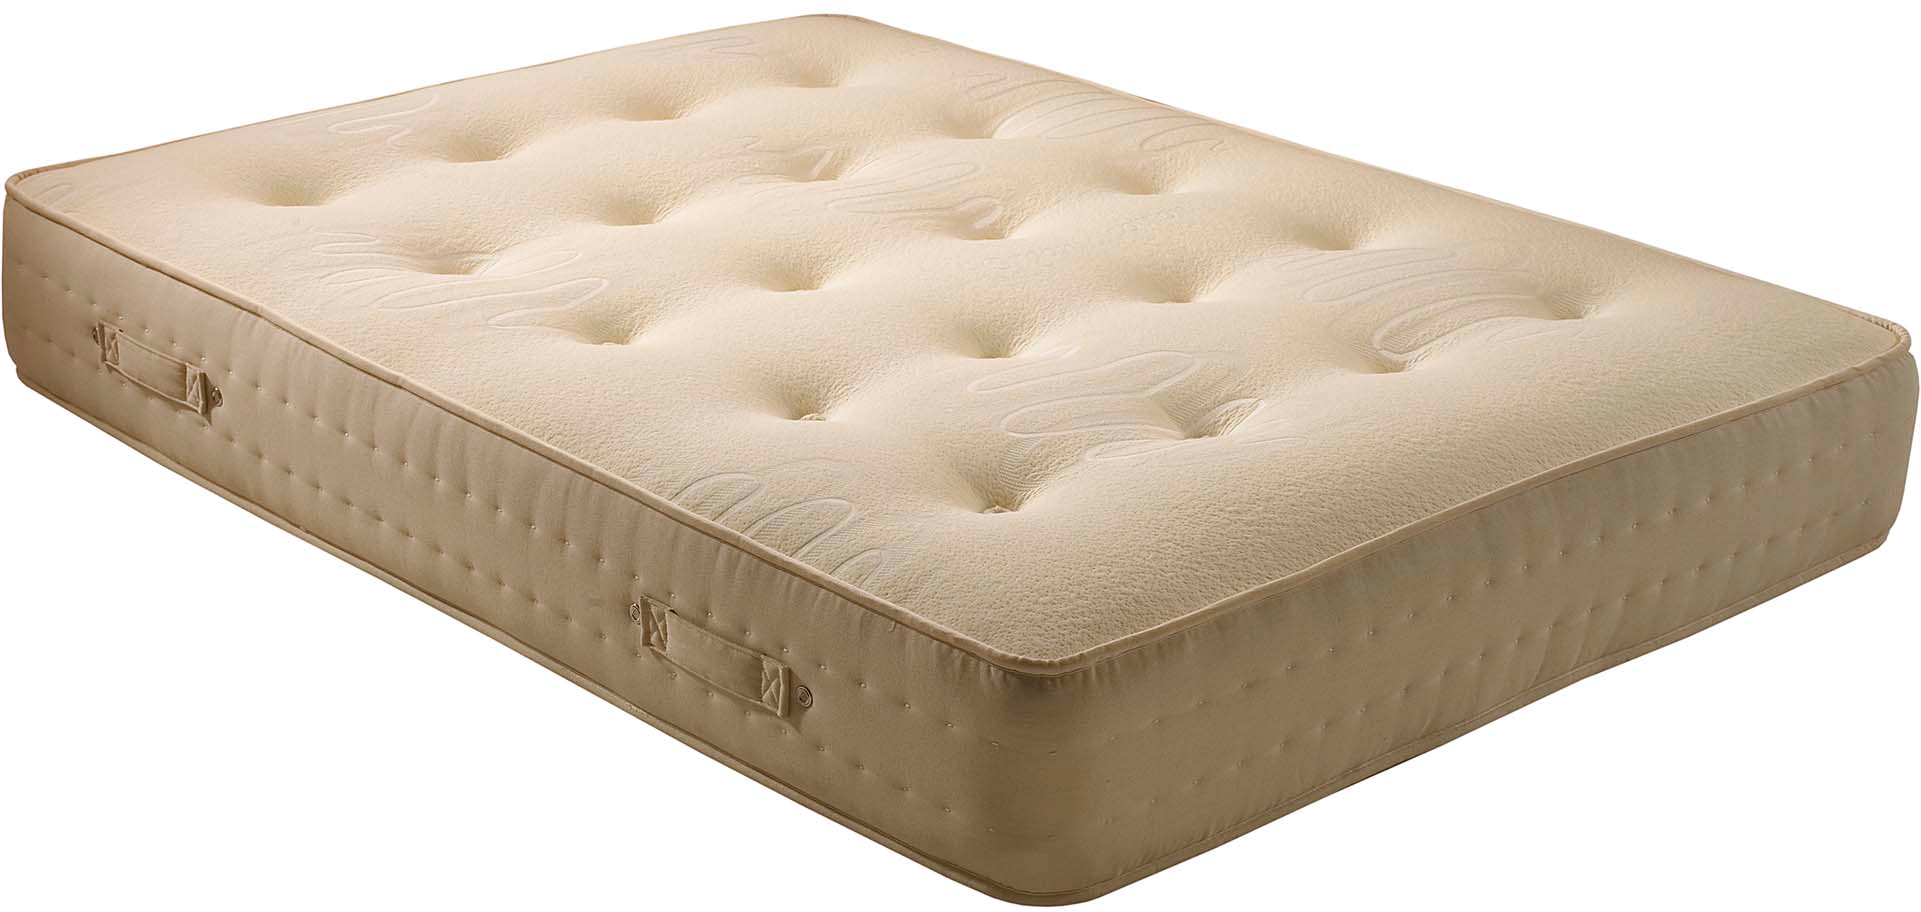 mattress top view png